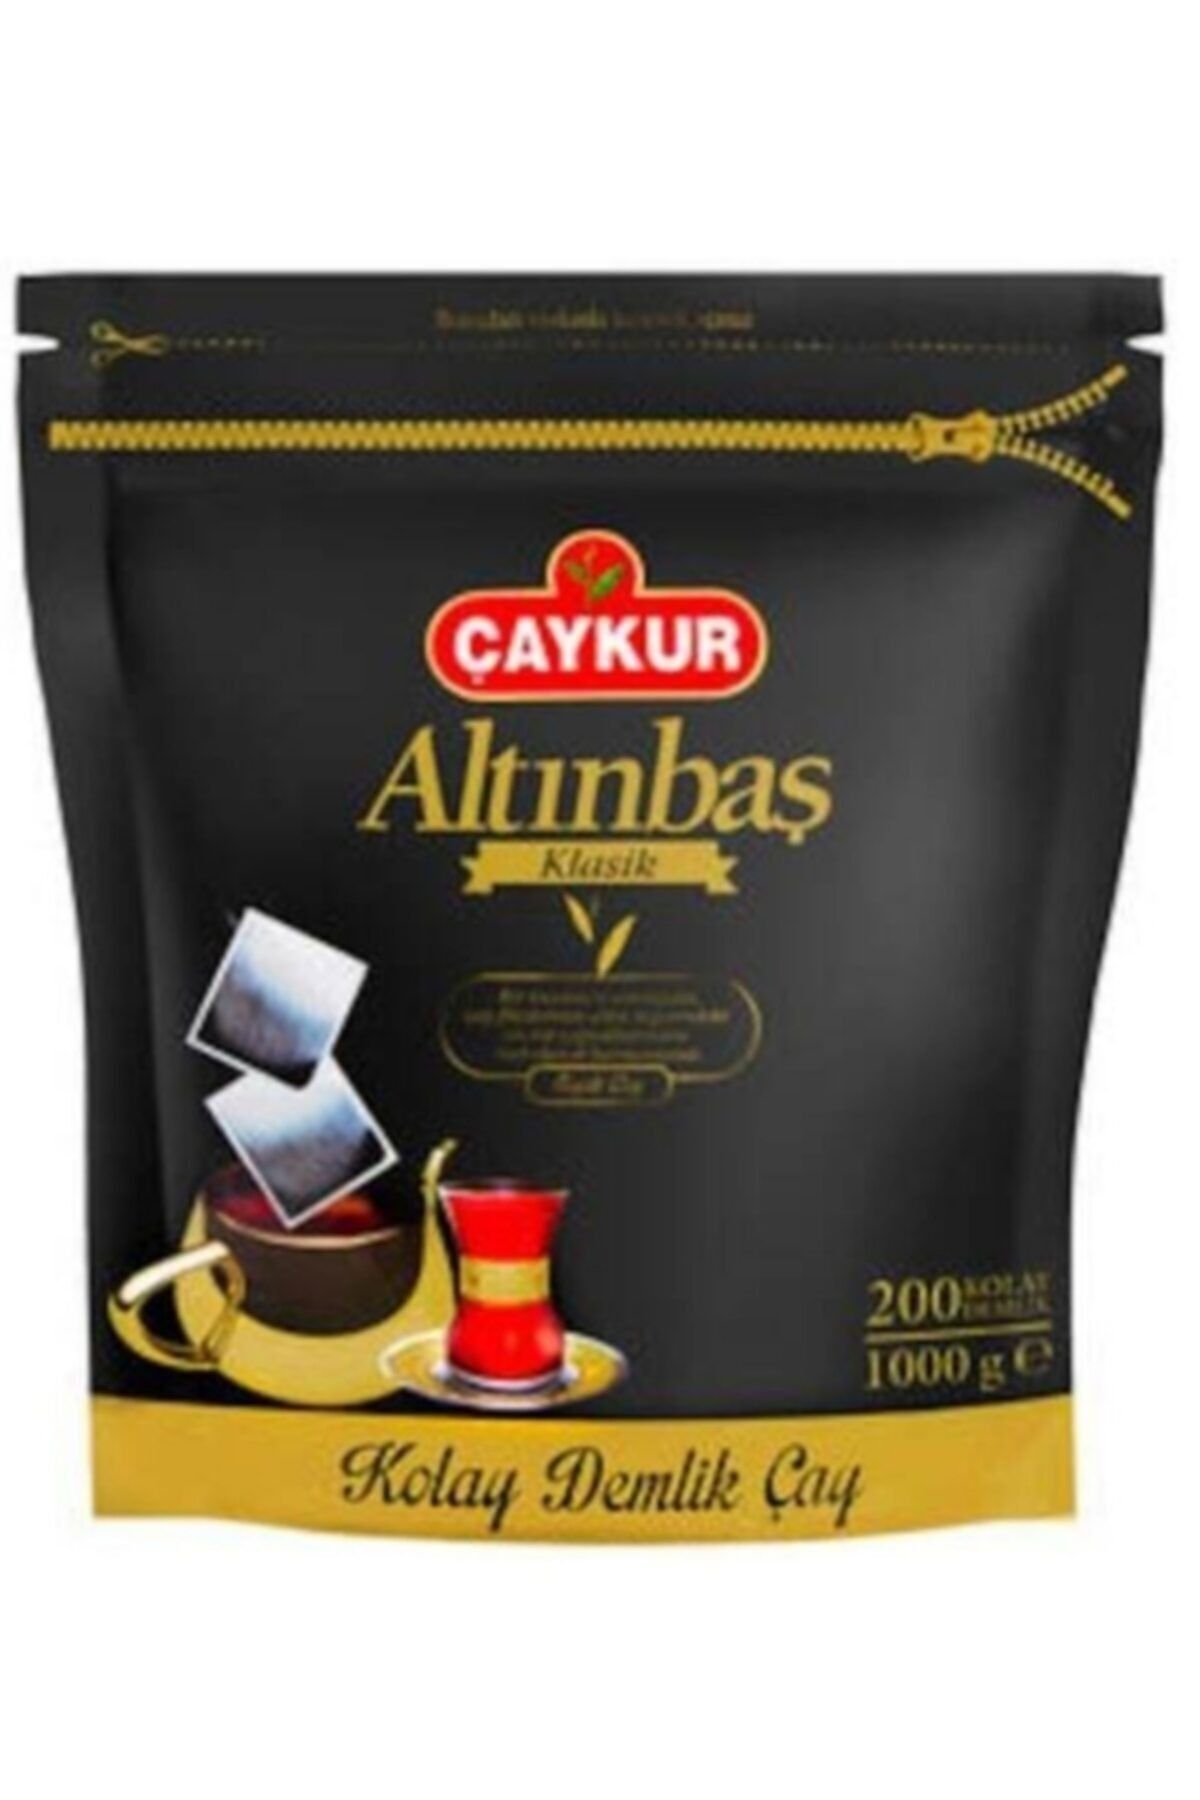 Çaykur Altınbaş Klasik Siyah Demlik Poşet Çay 200lü x 5 gr 6 Paket